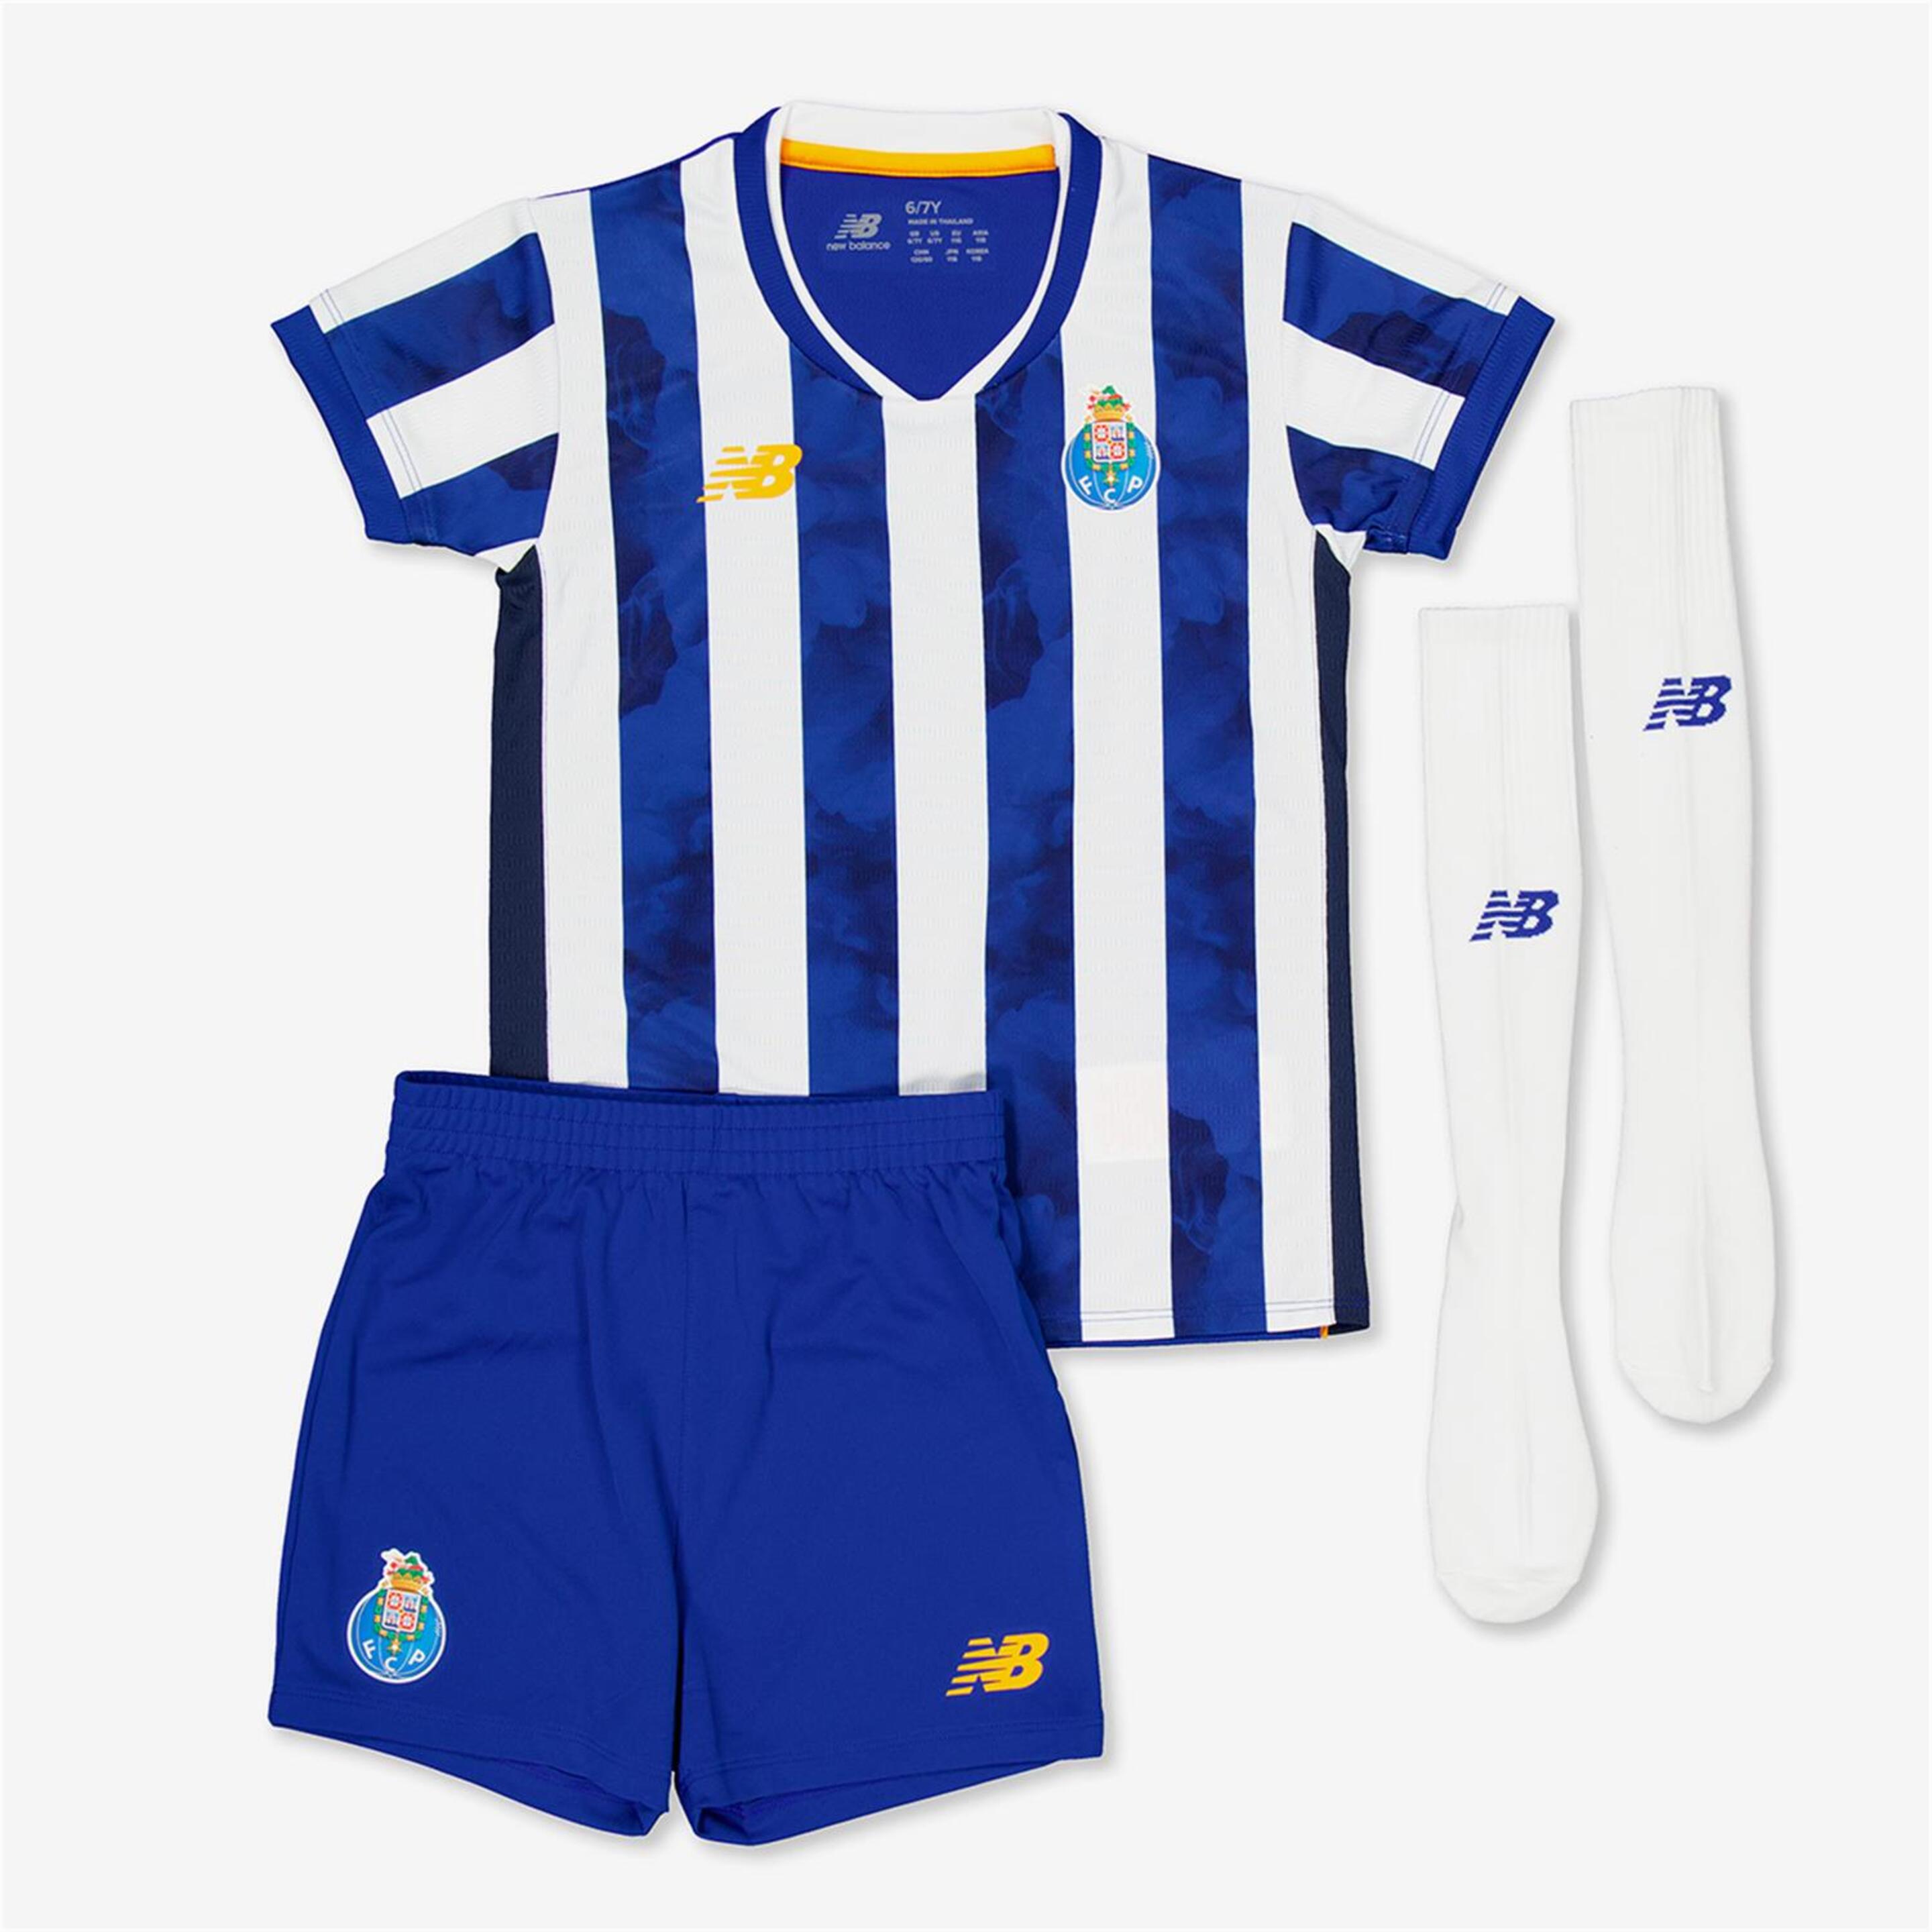 Conjunto 1º Equip. Fc Porto - azul - Futebol Criança